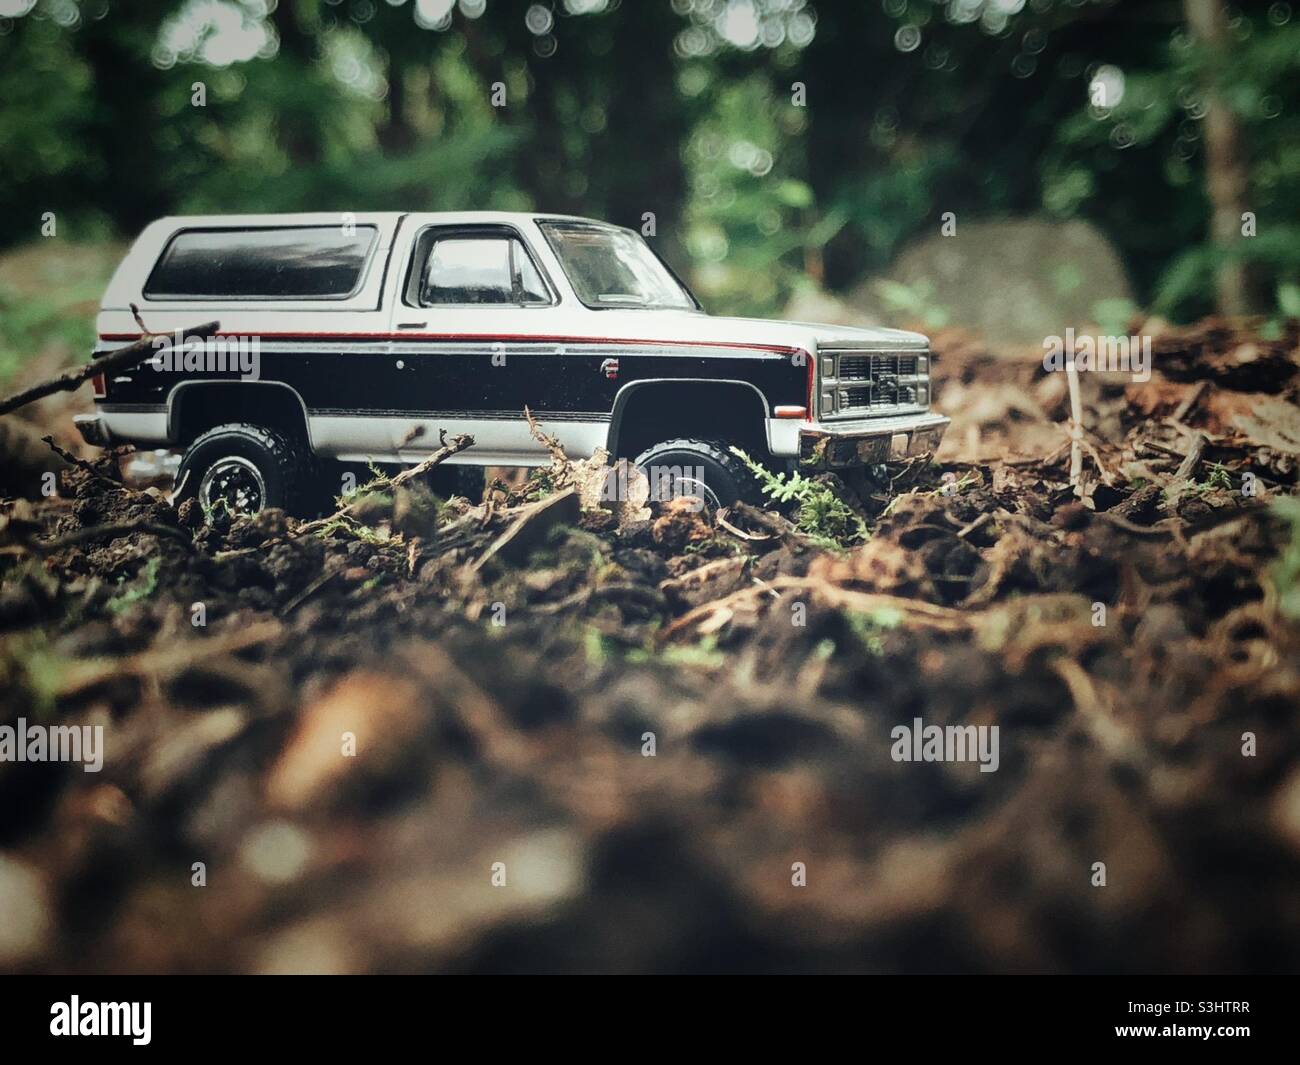 Ein Spielzeug-Lastwagen zwischen Schmutz und Trümmern auf einem Waldboden. Stockfoto